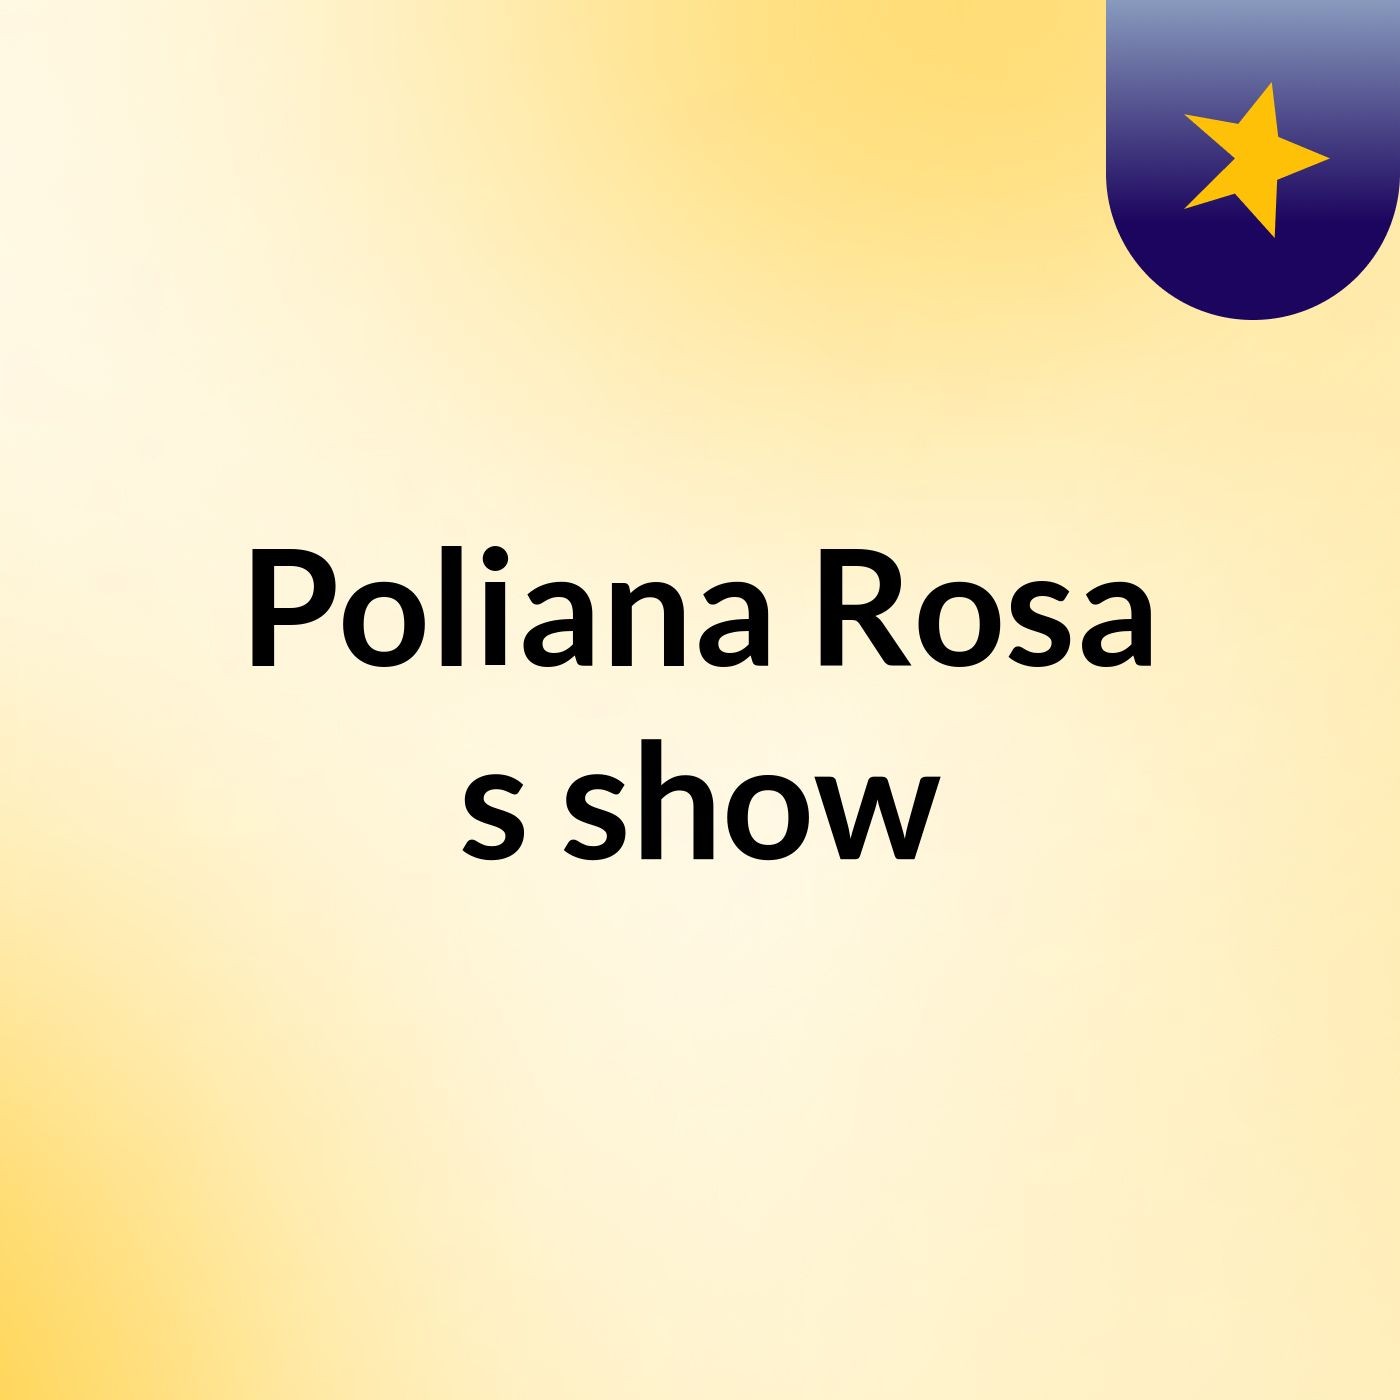 Poliana Rosa's show